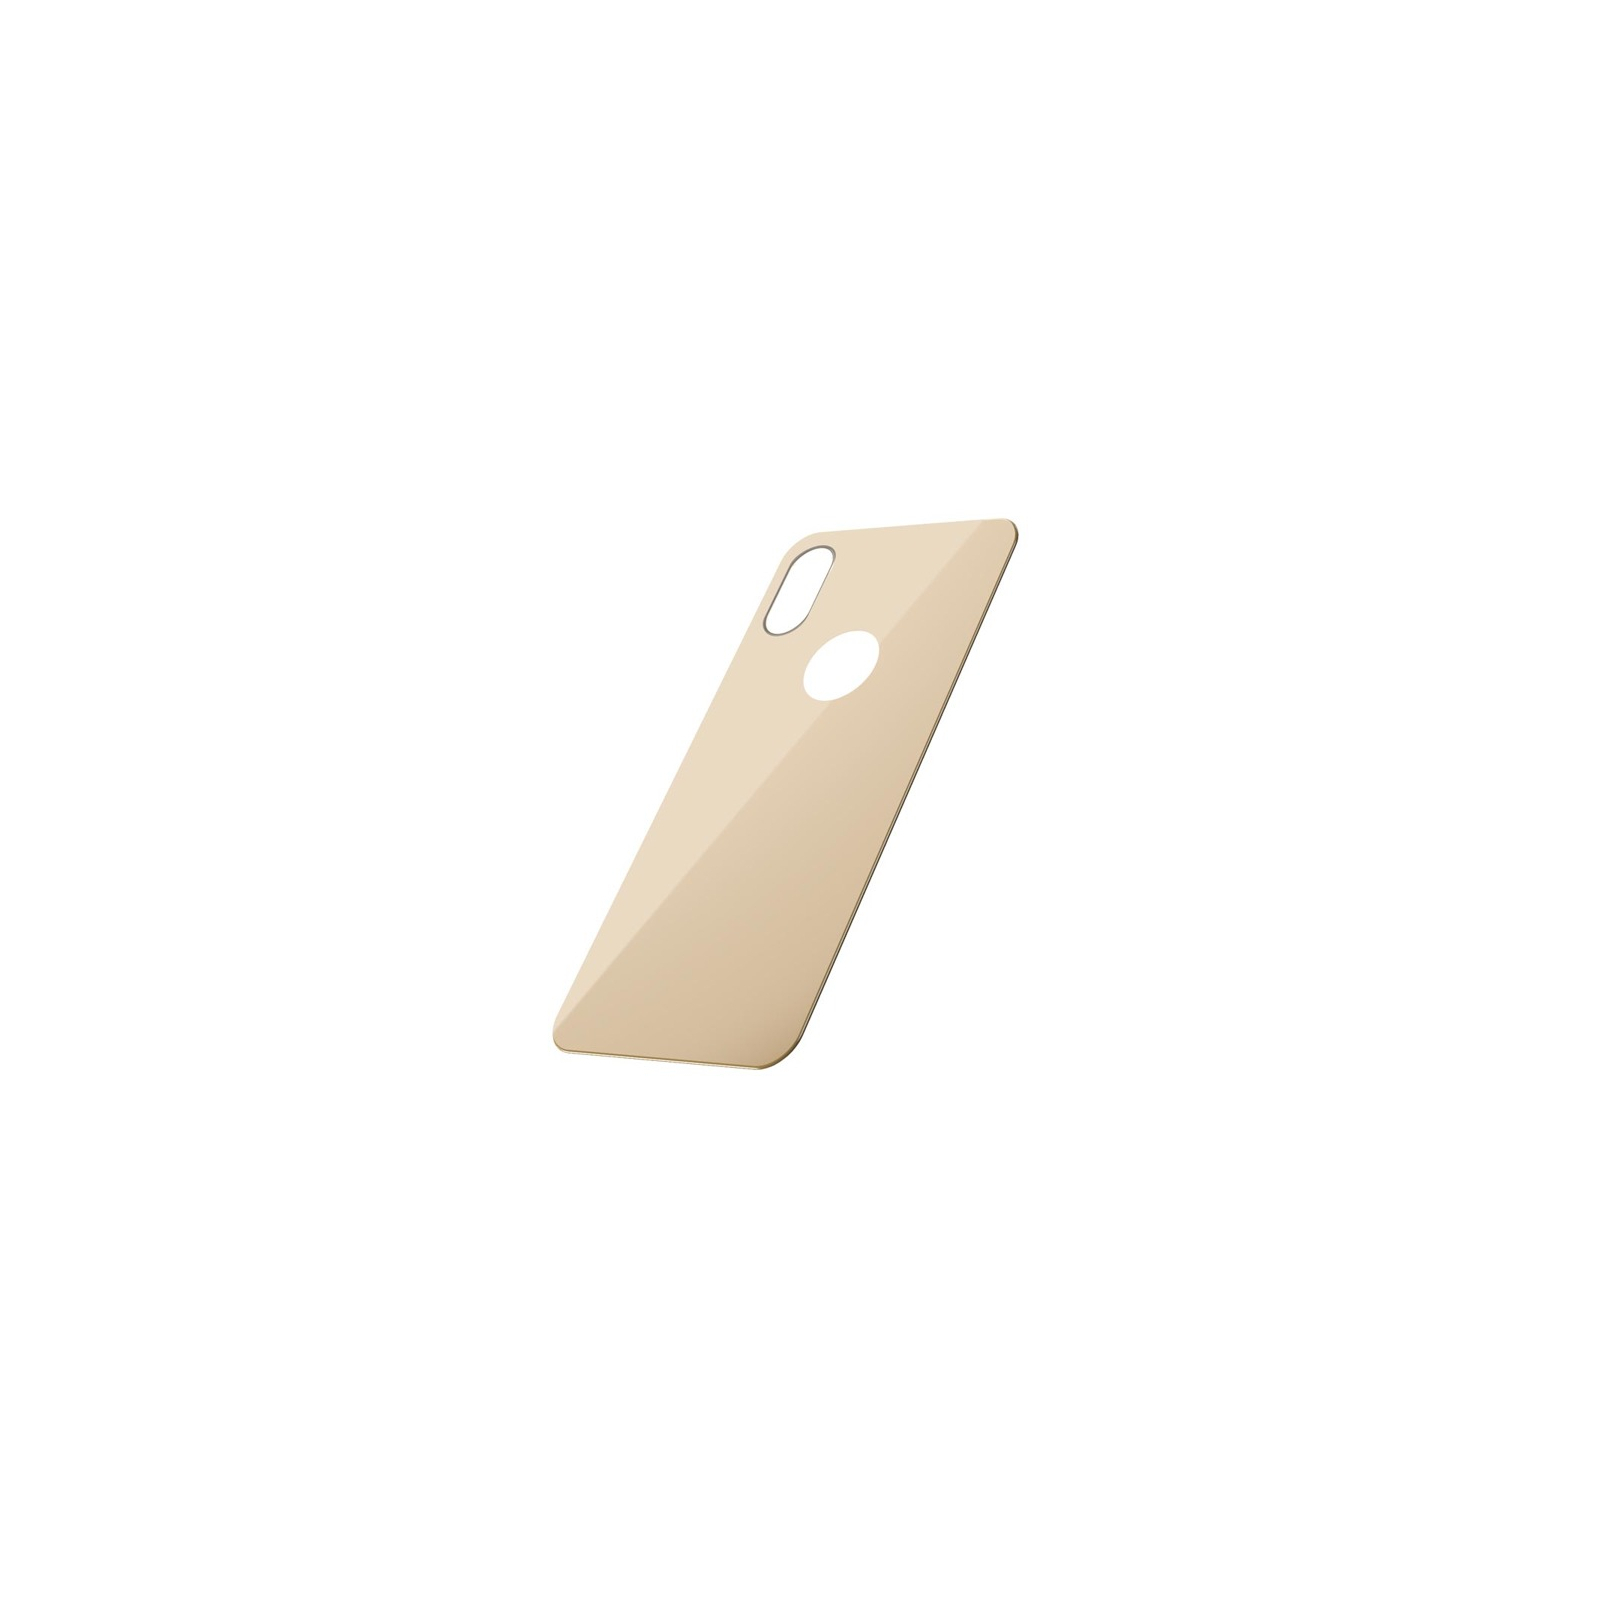 Стекло защитное Baseus iPhone XS 0.3mm Full rear protector, Gold (SGAPIPH58-BM0V) изображение 2